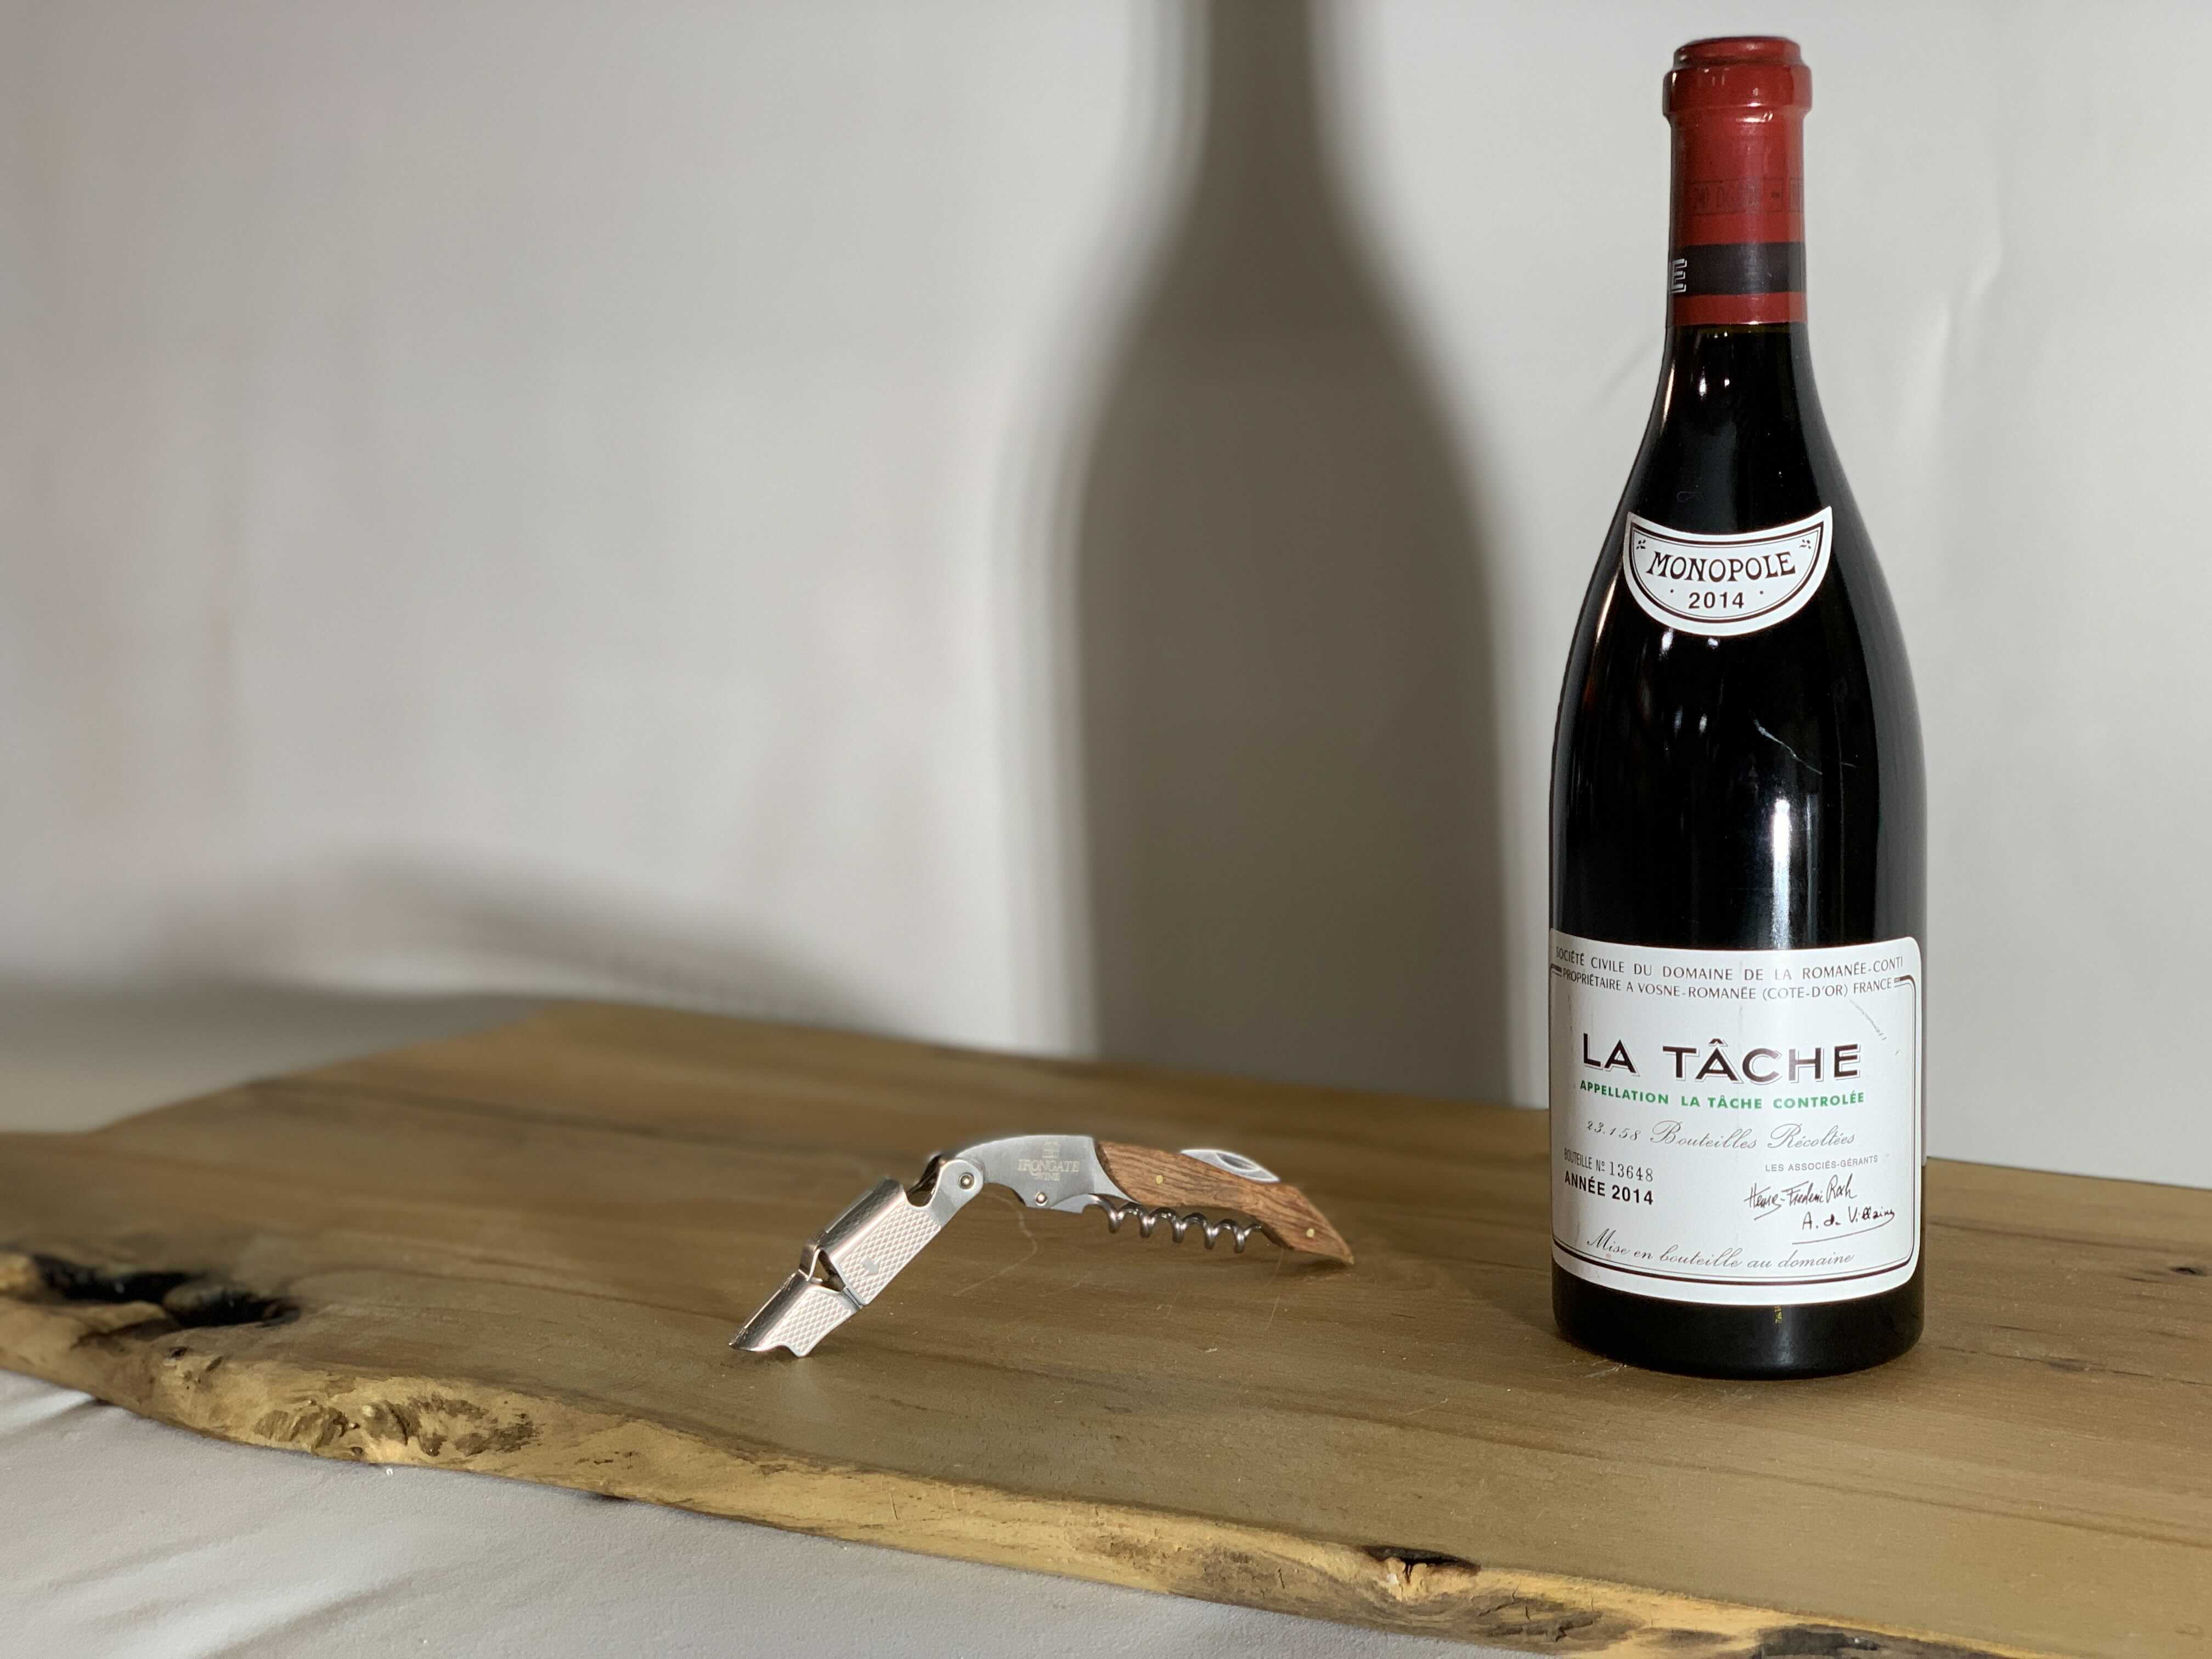 Domaine de la Romanée La Tâche 2014 among the rare wines for sale via IronGateAuctions.com from March 23 to March 30, 2021.